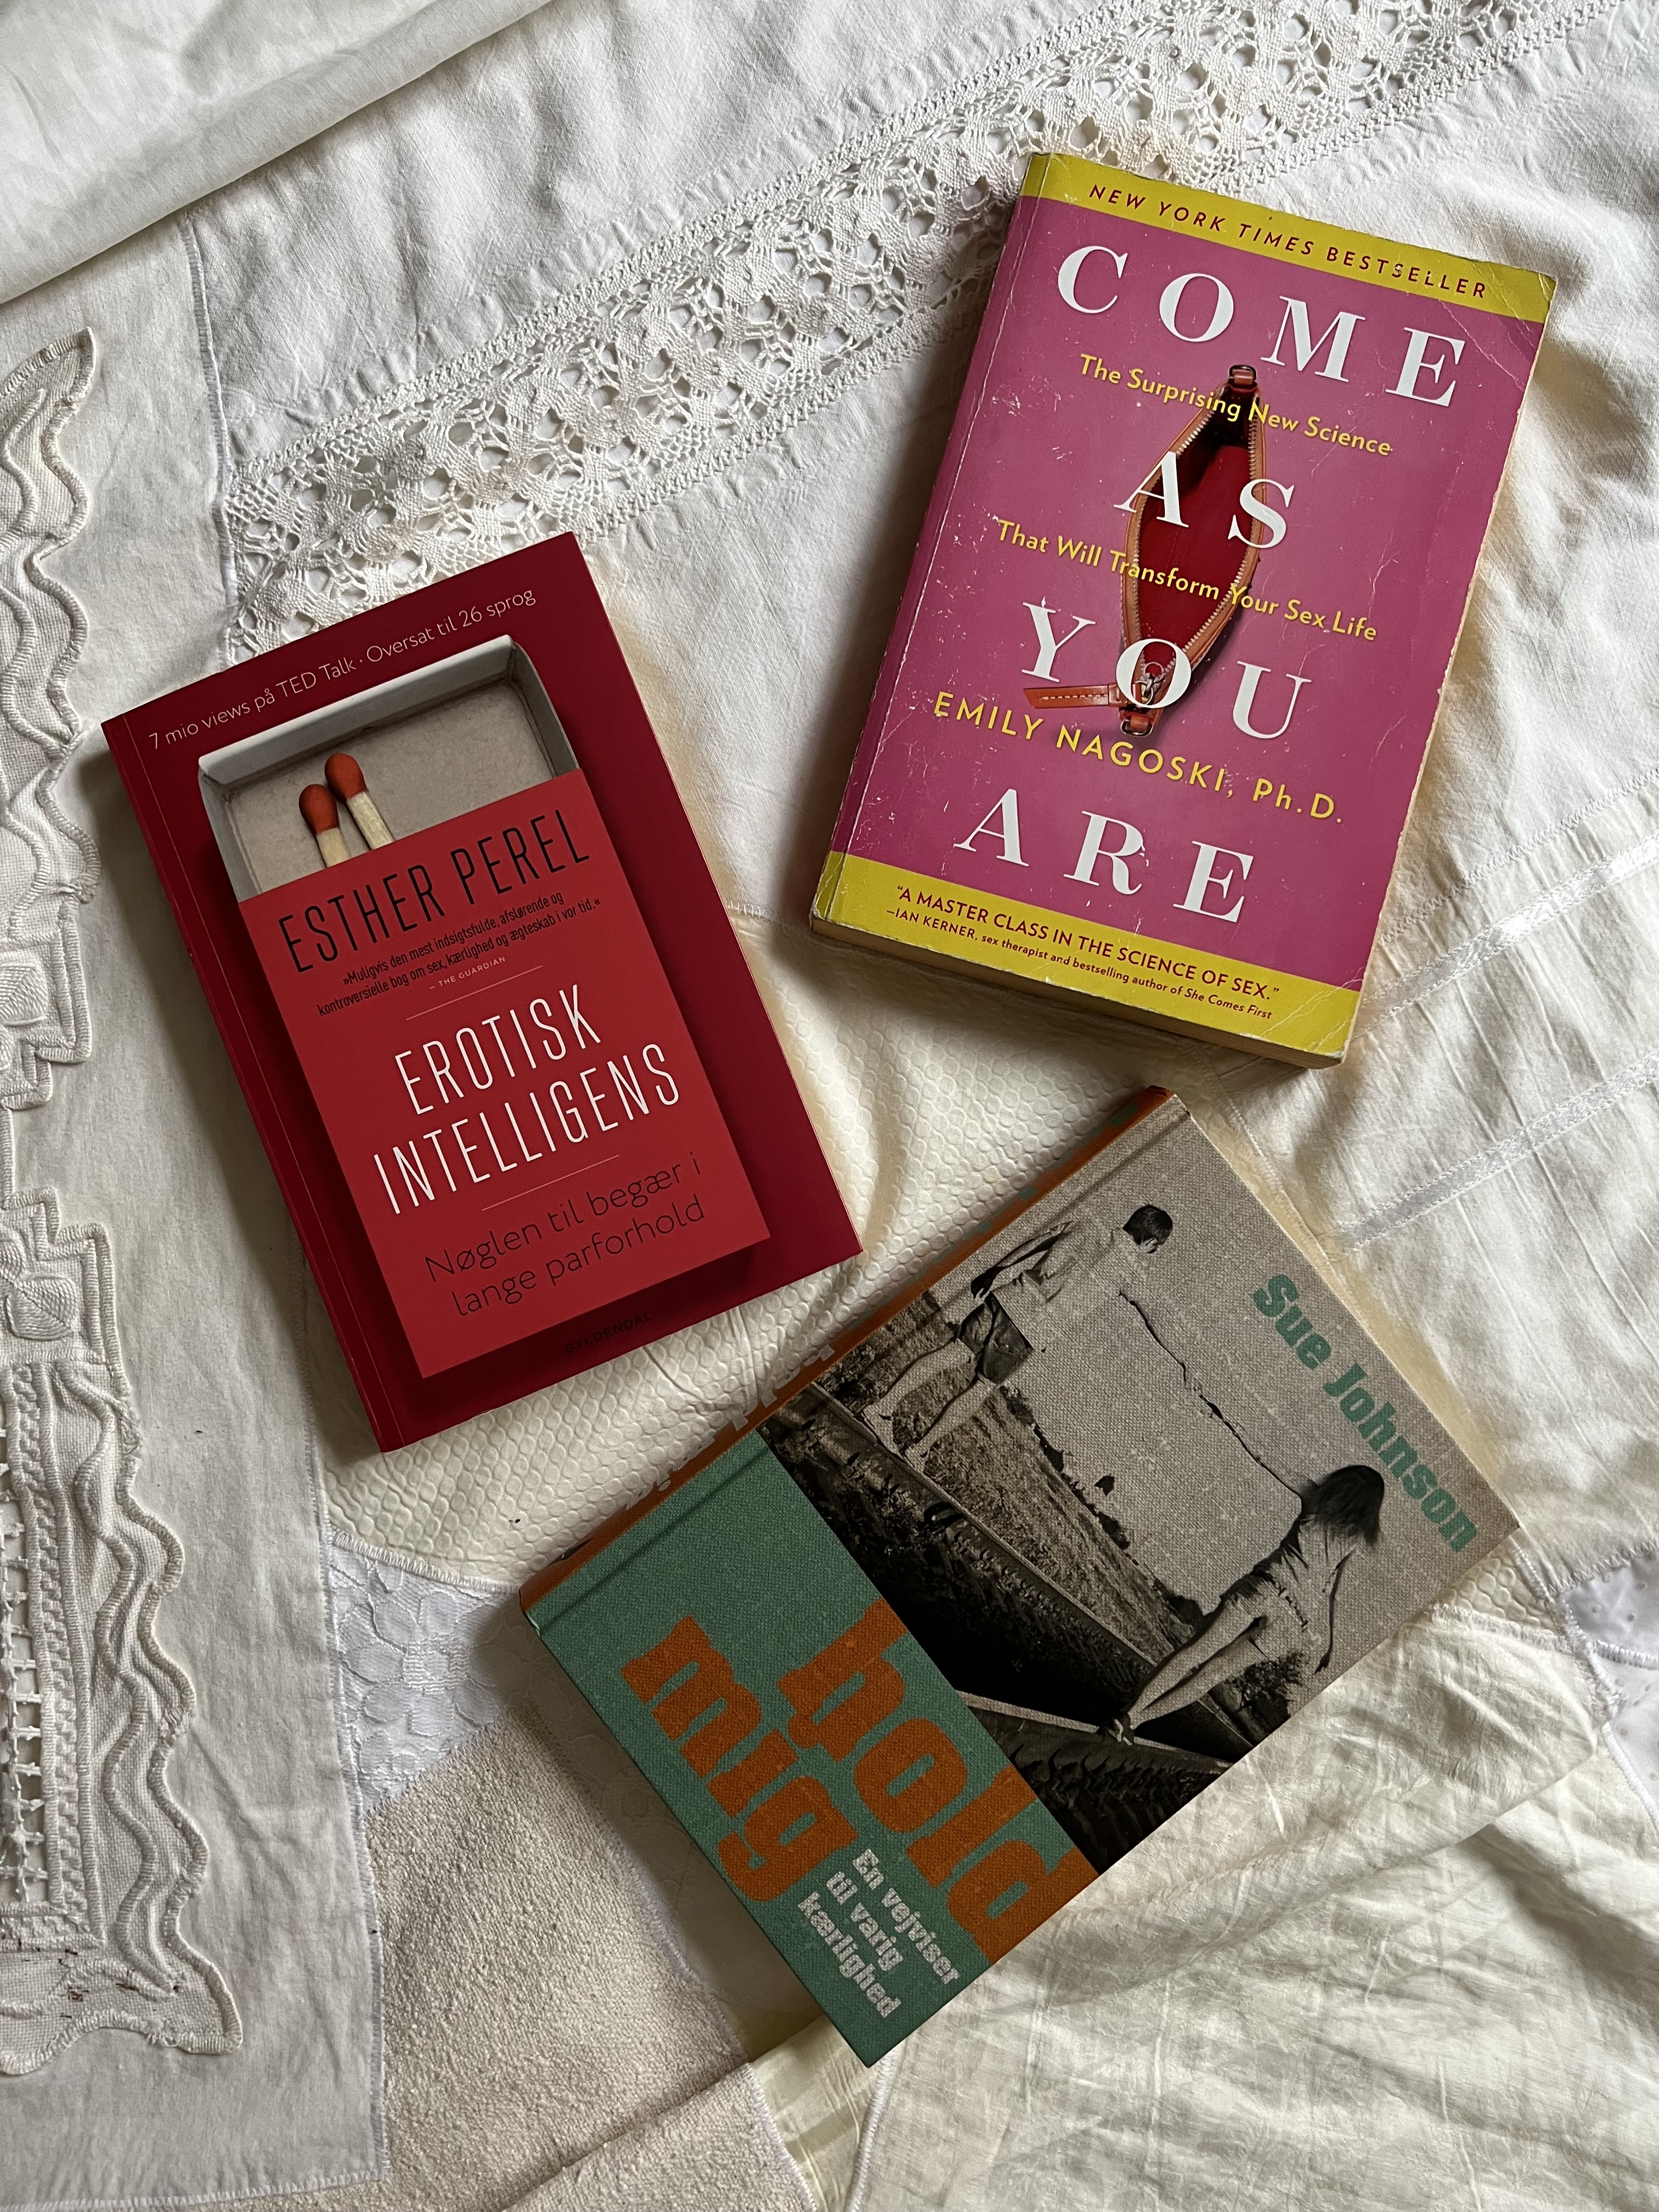 De 3 bedste bøger om lyst, kærlighed og parforhold - Daisy Løvendahl billede